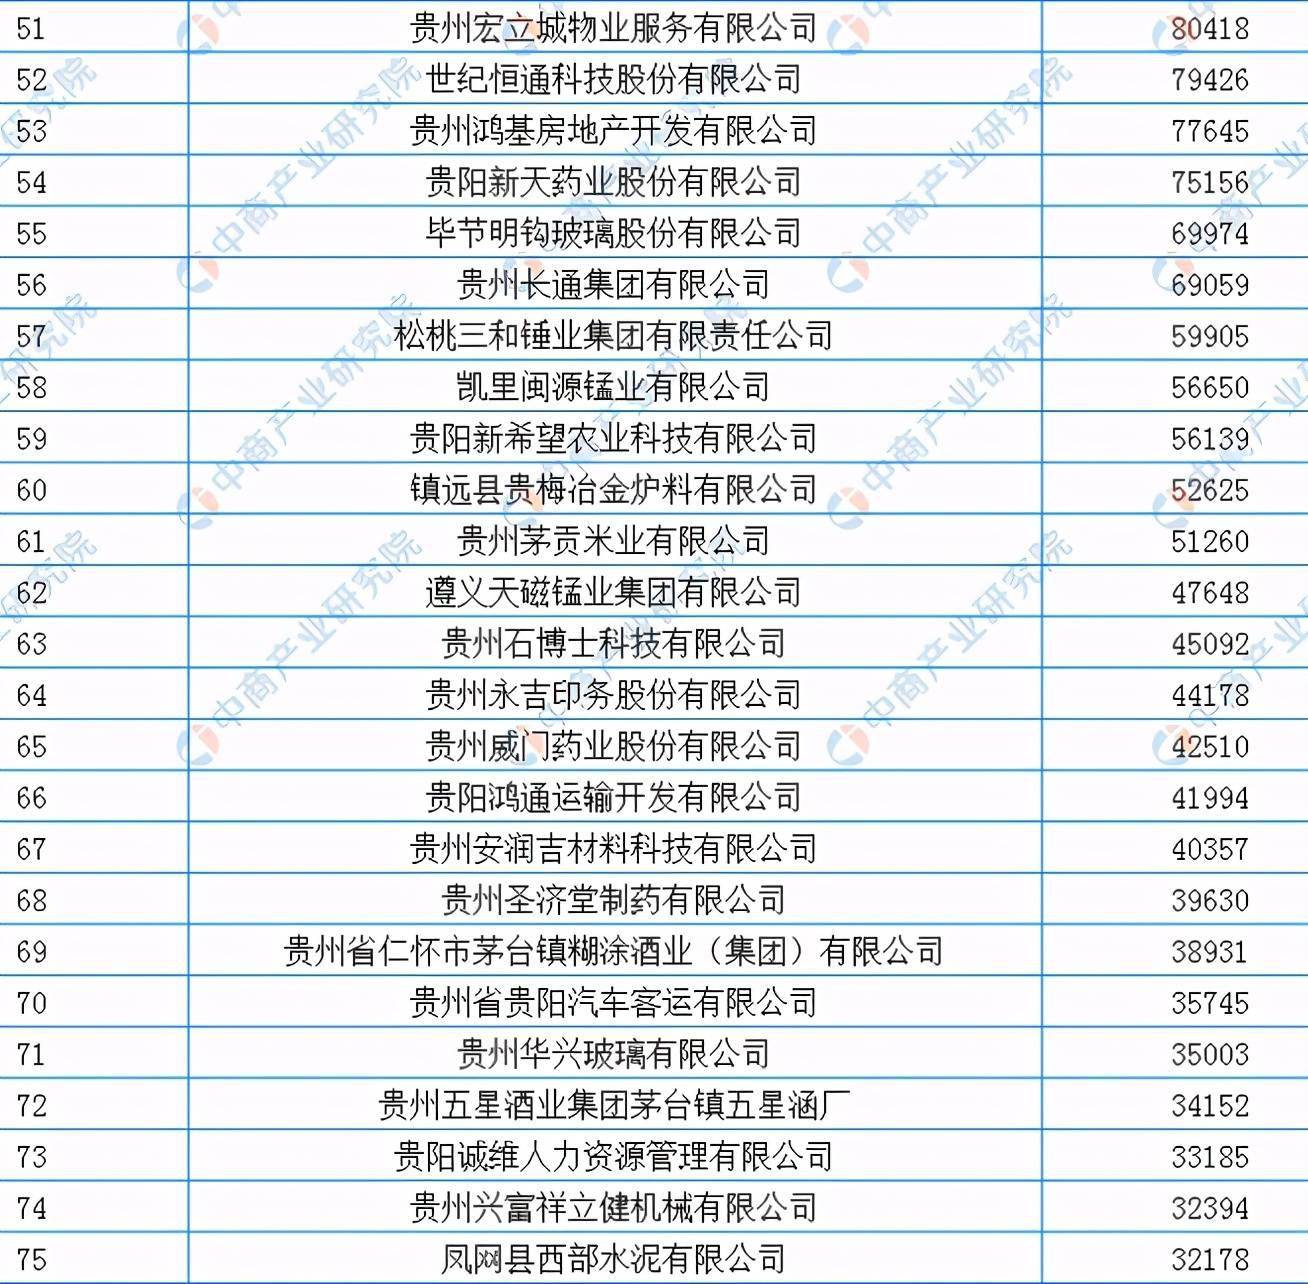 贵州民营企业100强名单44家营收超10亿元老干妈第七